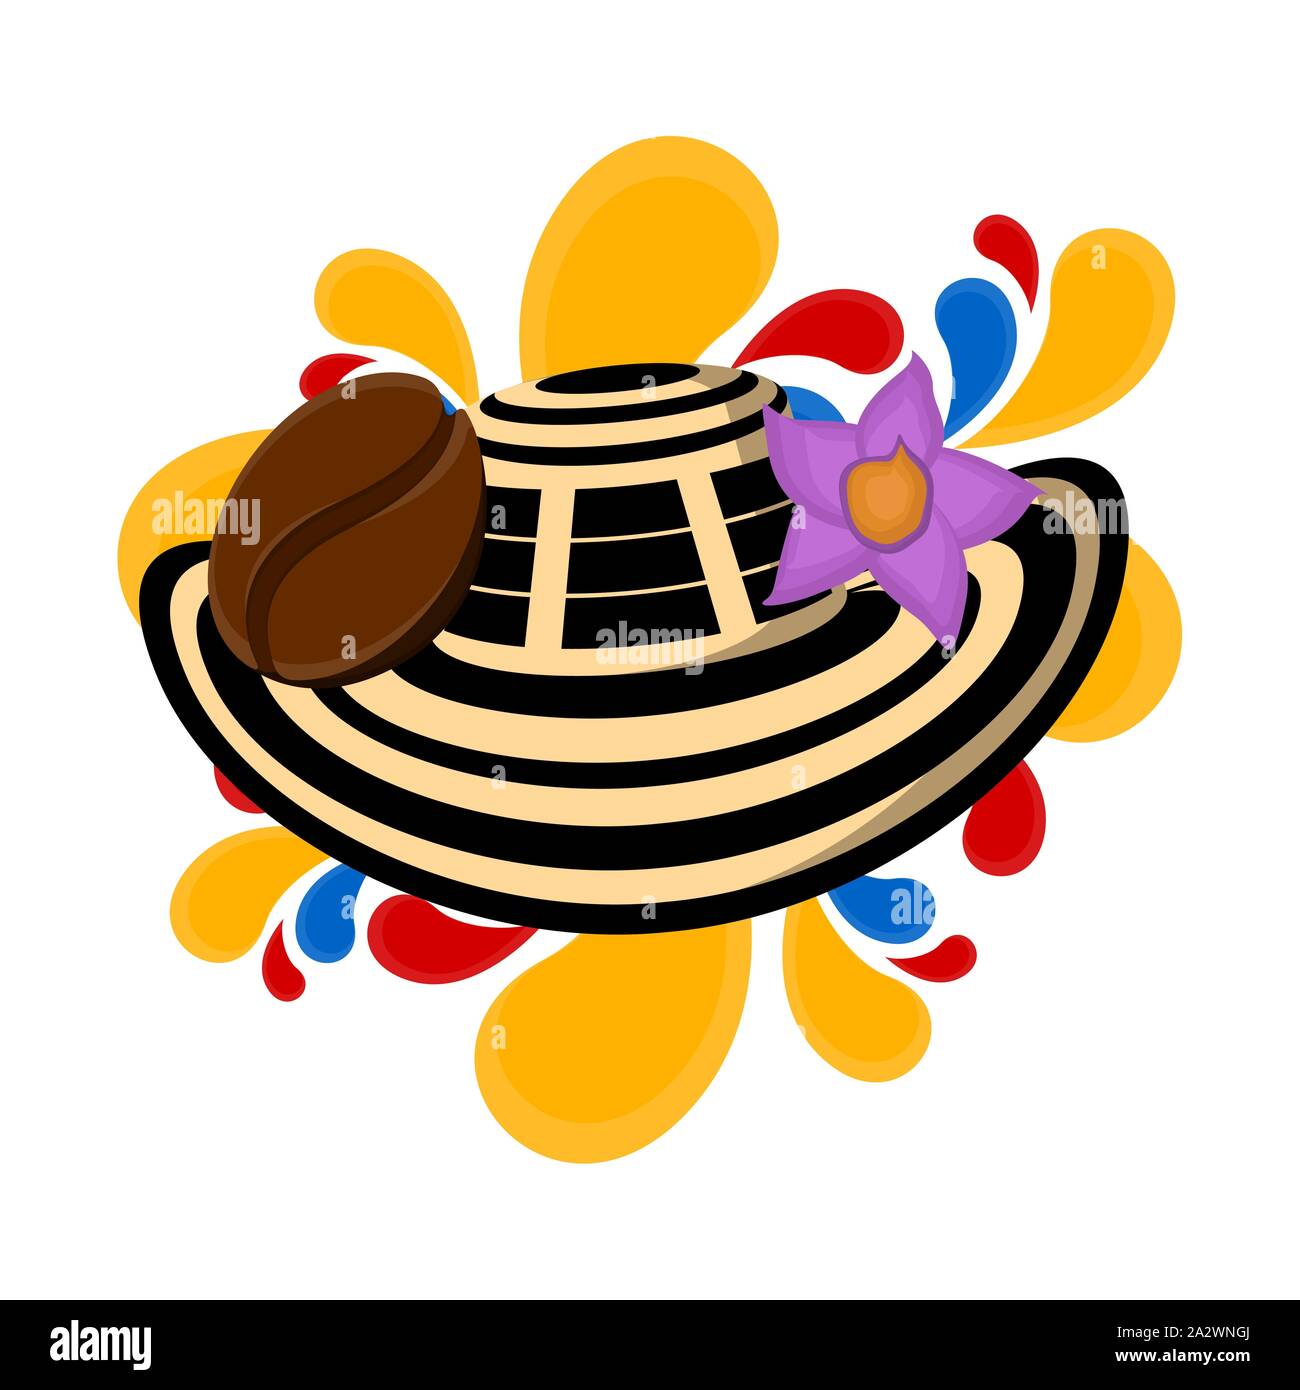 Sombrero vueltiao con café bena y flor. Imagen representativa de Colombia -  Vector Imagen Vector de stock - Alamy